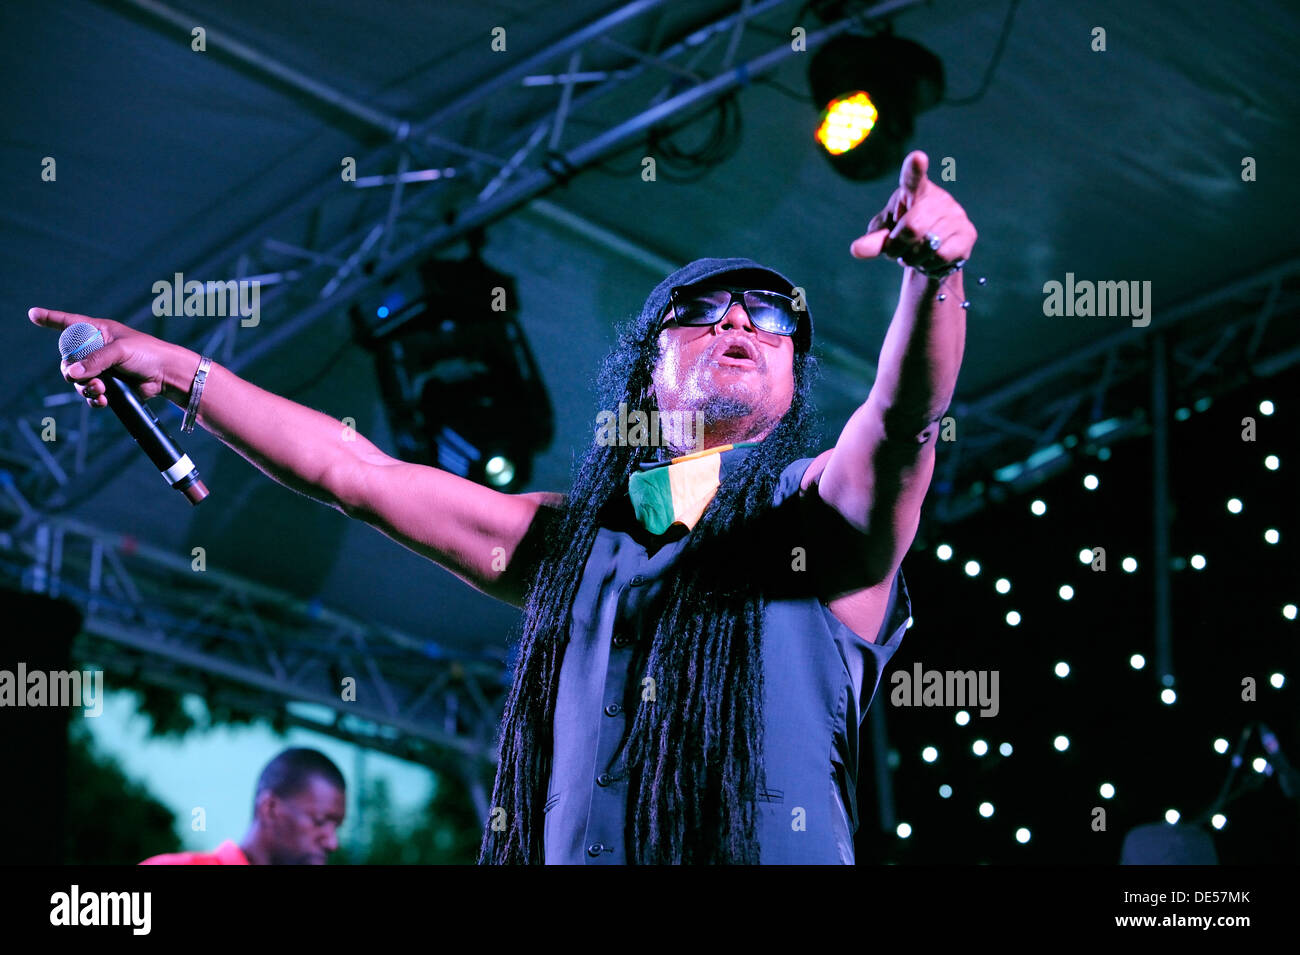 La chanteuse britannique jamaïcaine Maxi Priest sur scène à l'autopont de l'afficher, Hockley Circus, Birmingham, Angleterre, 18 août 2012 Banque D'Images